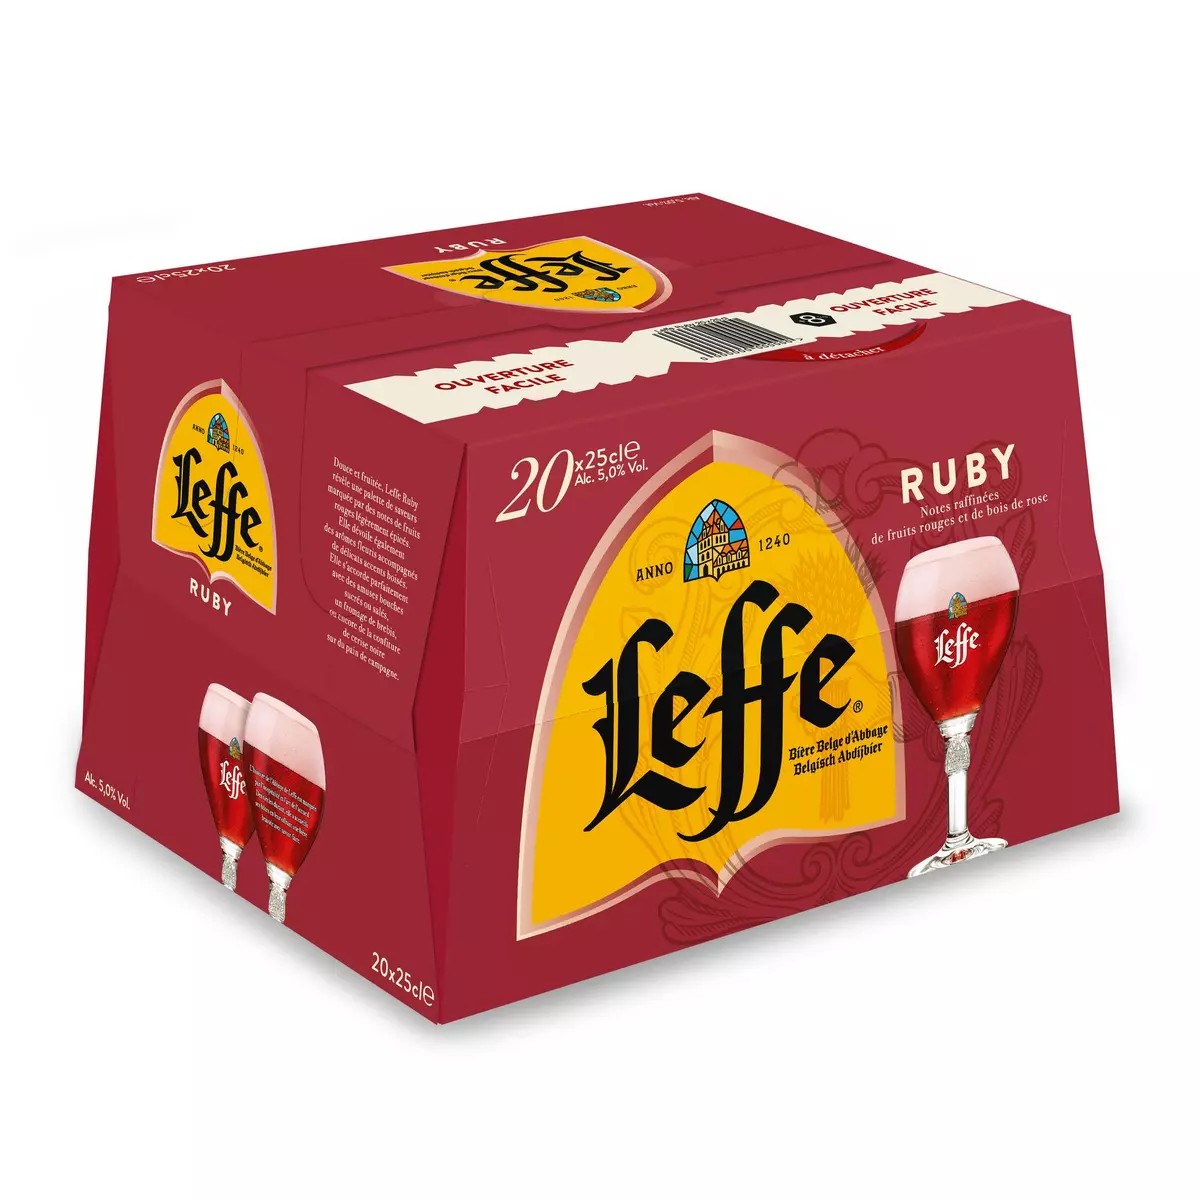 LEFFE Bière Ruby aromatisée fruits rouges 5% 20x25cl